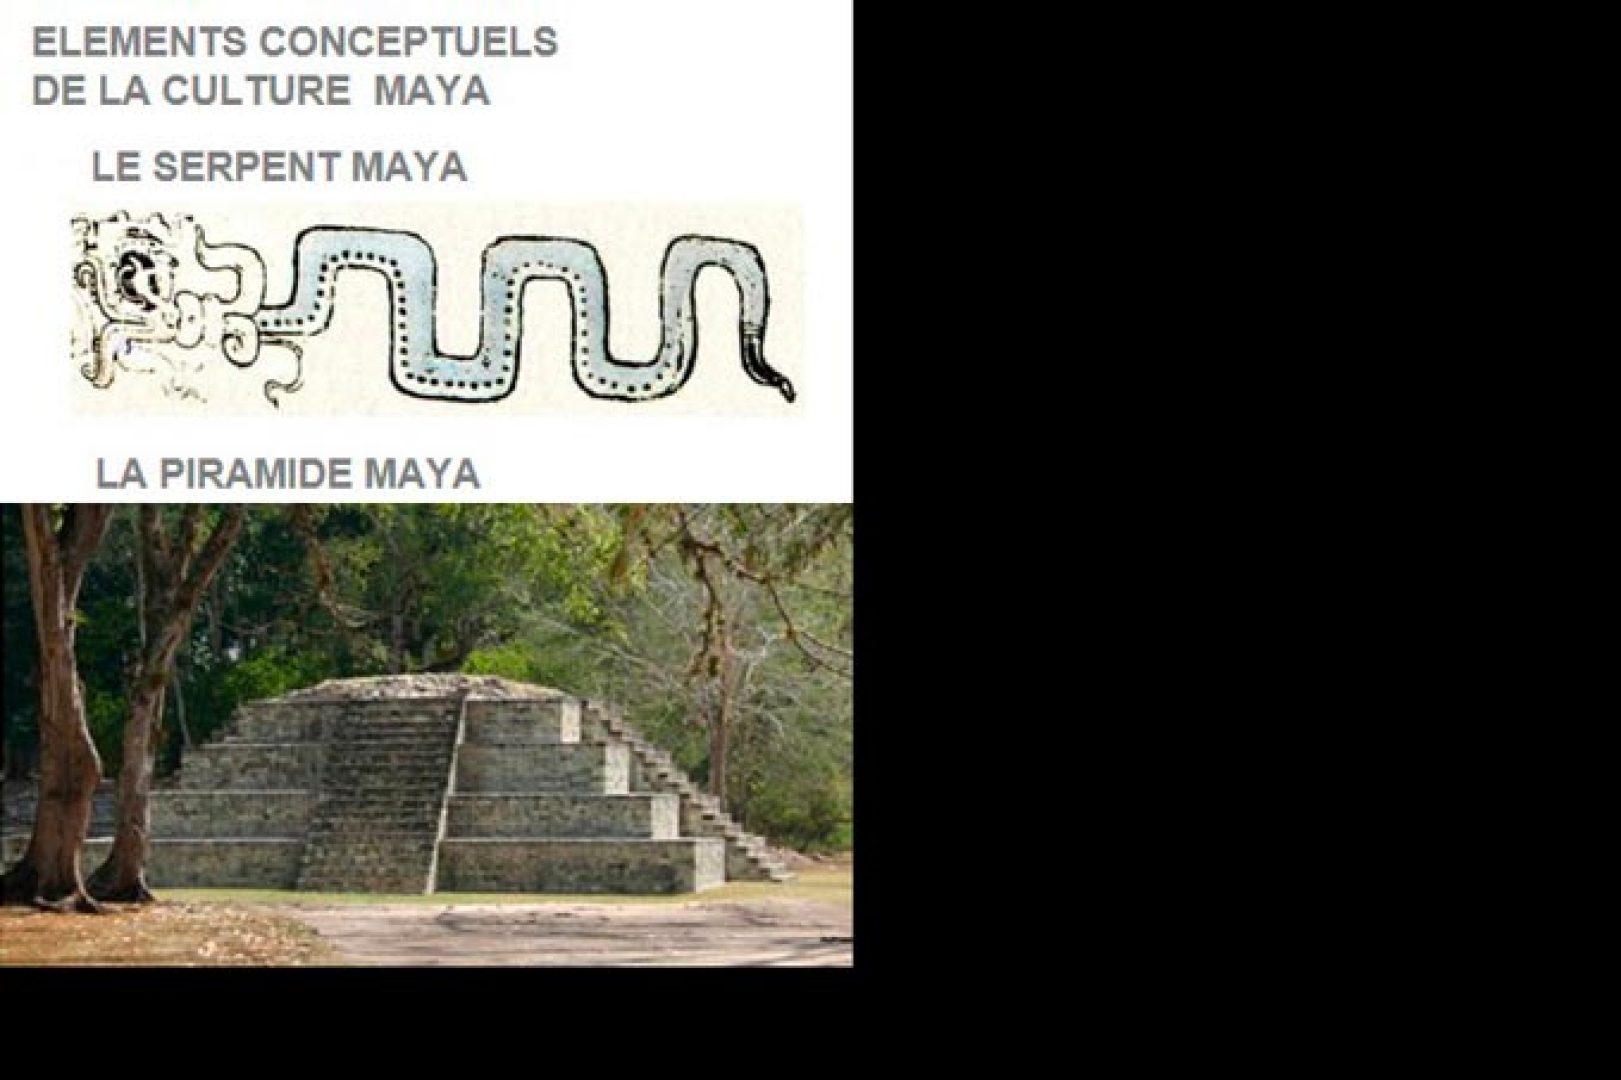 Référence : Le serpent Maya, symbole de vie et connaissance